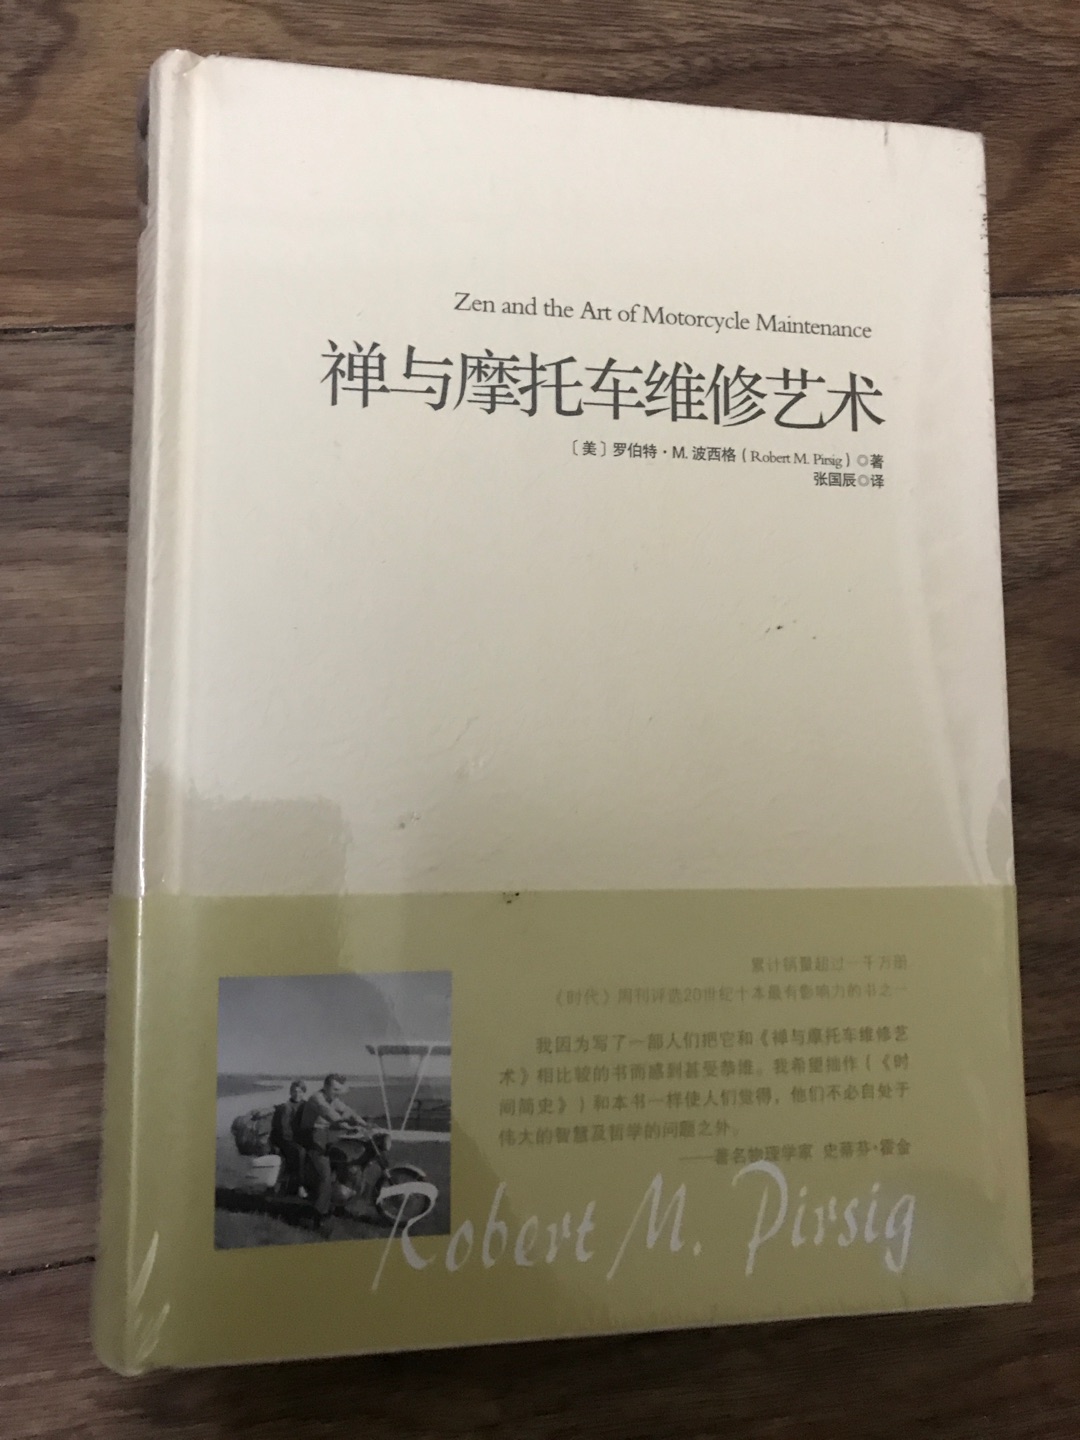 重庆出版社出版的重现经典系列之《禅语摩托车维修艺术》，这本书若不是书名，可能会更有名。但这却掩饰不了也掩盖不了内里的优秀，不要被书名耽误了，赶紧买来拜读吧！